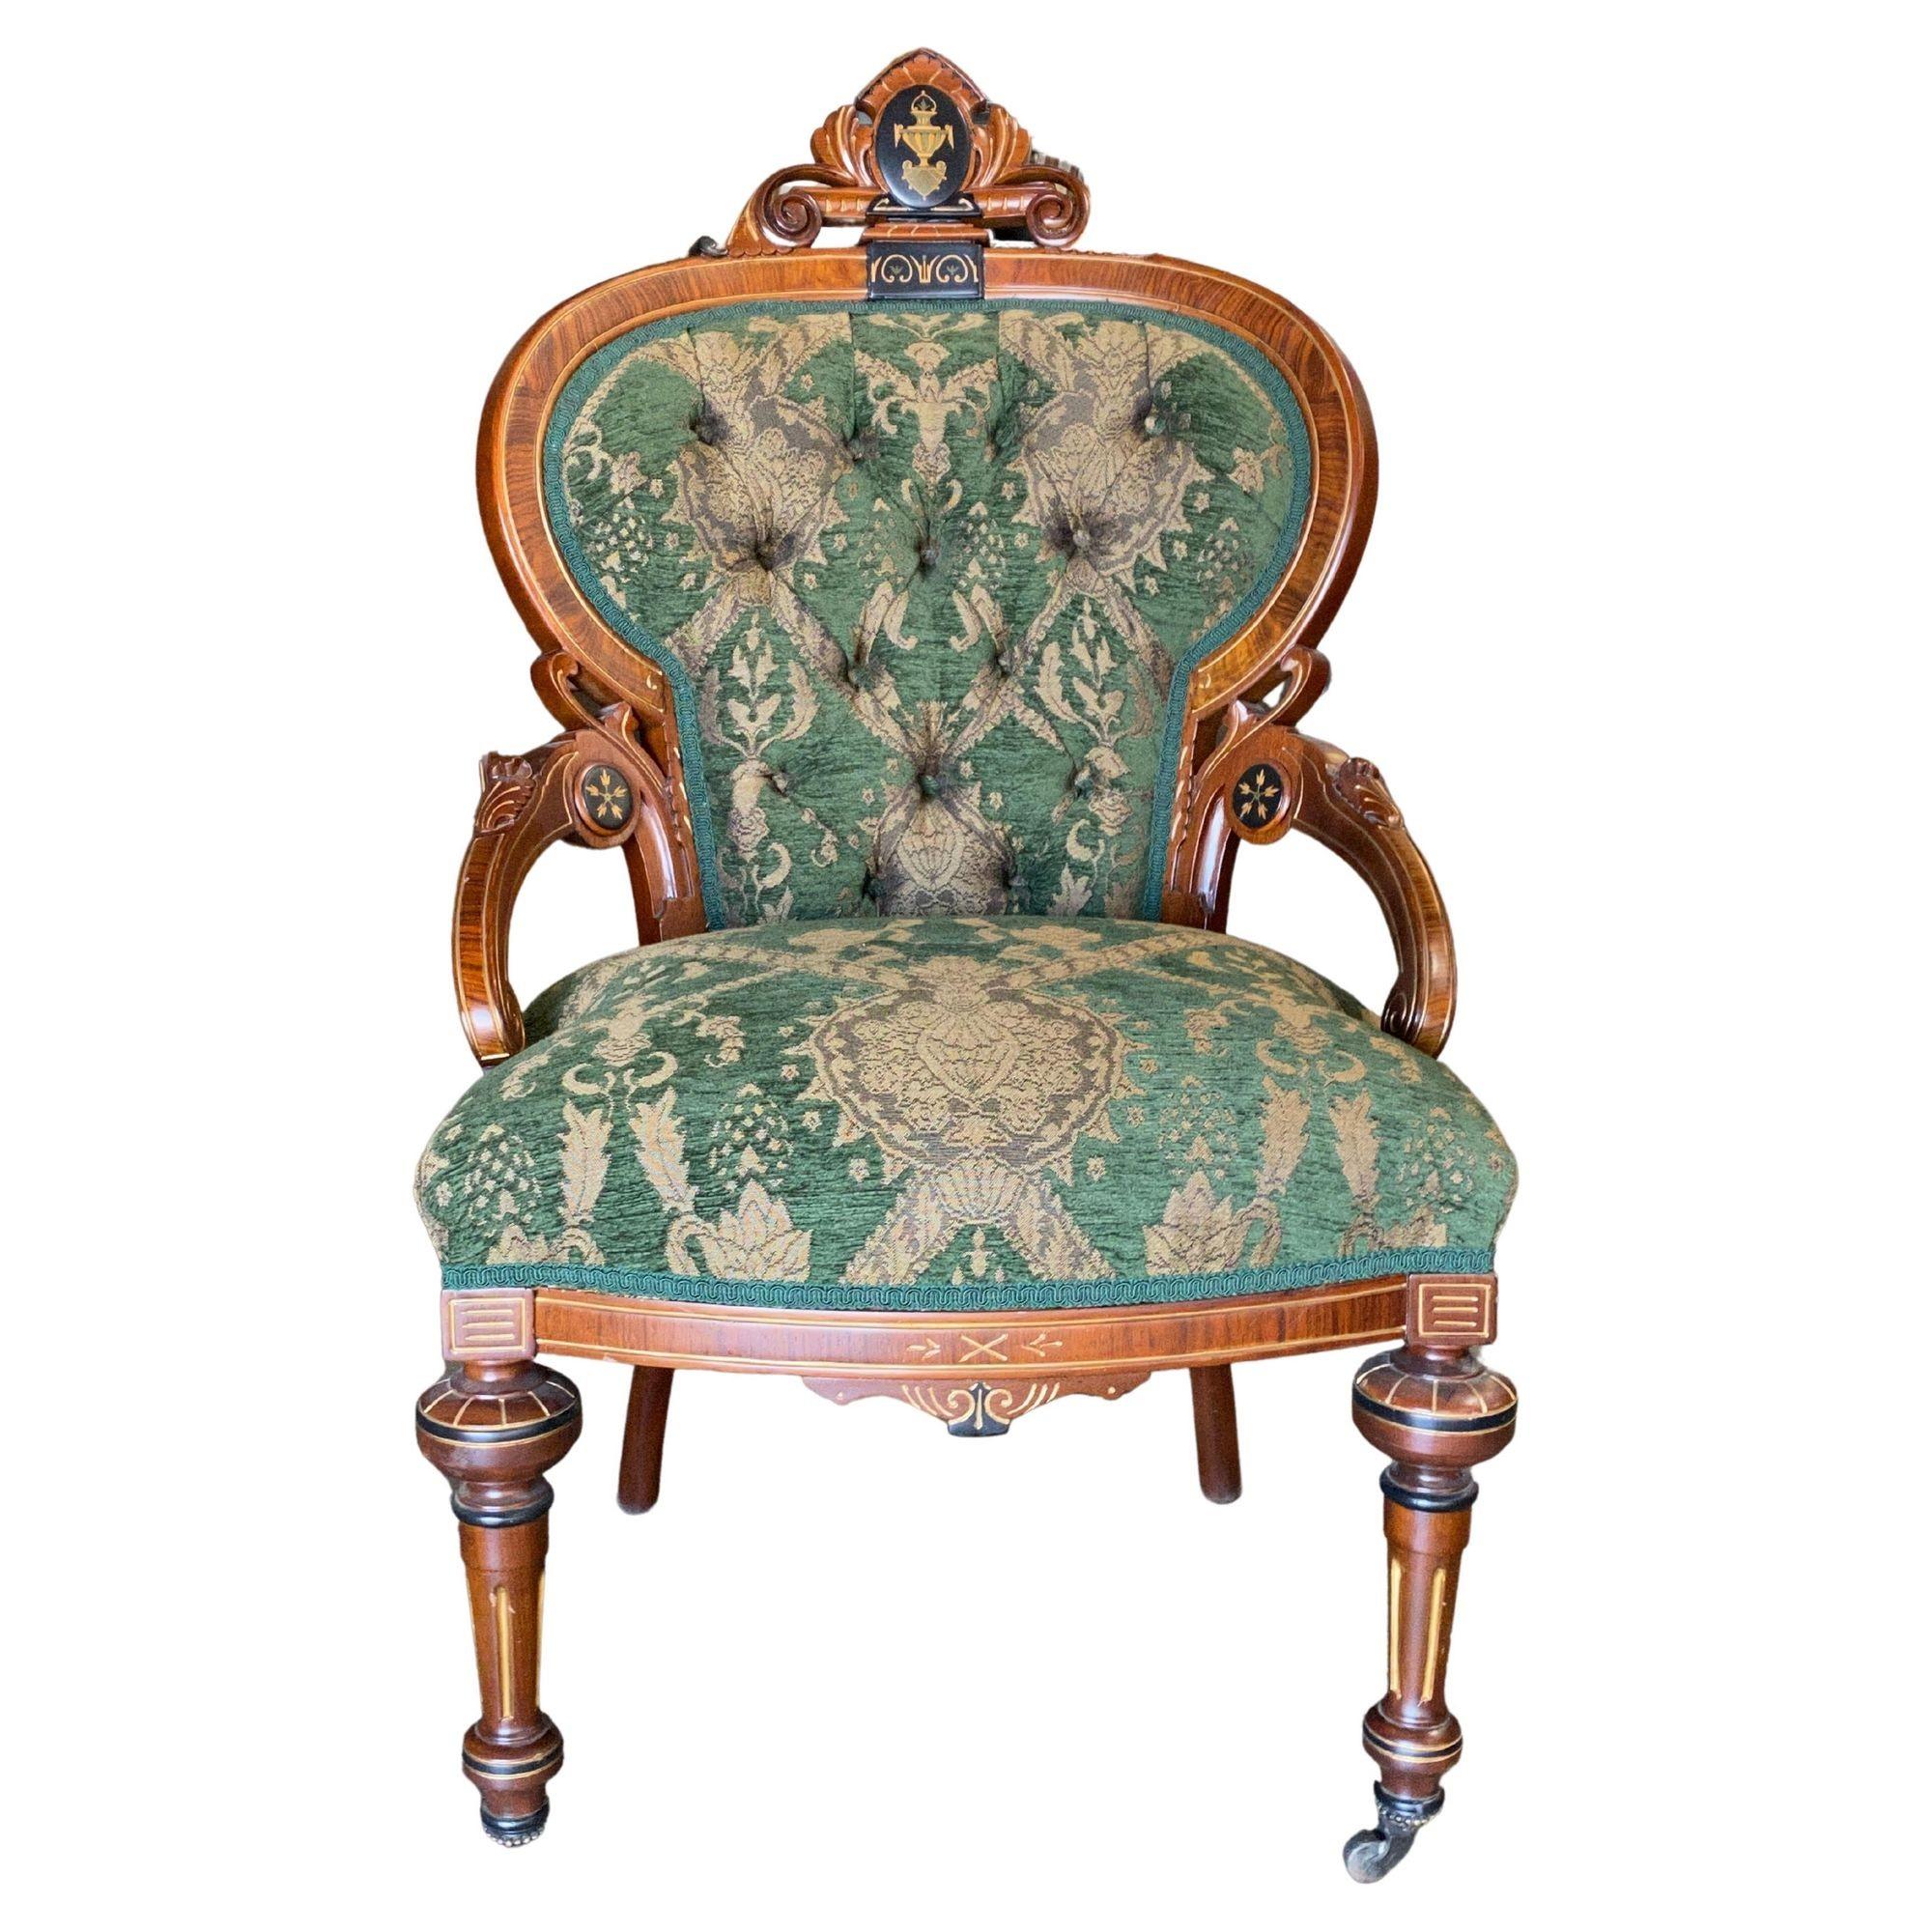 Ensemble de salon de la fin du XIXe siècle, de style victorien néo-renaissance, comprenant un canapé, deux fauteuils club et deux chaises latérales. Chacun d'entre eux est construit en noyer avec des incrustations de bois de ronce et des panneaux